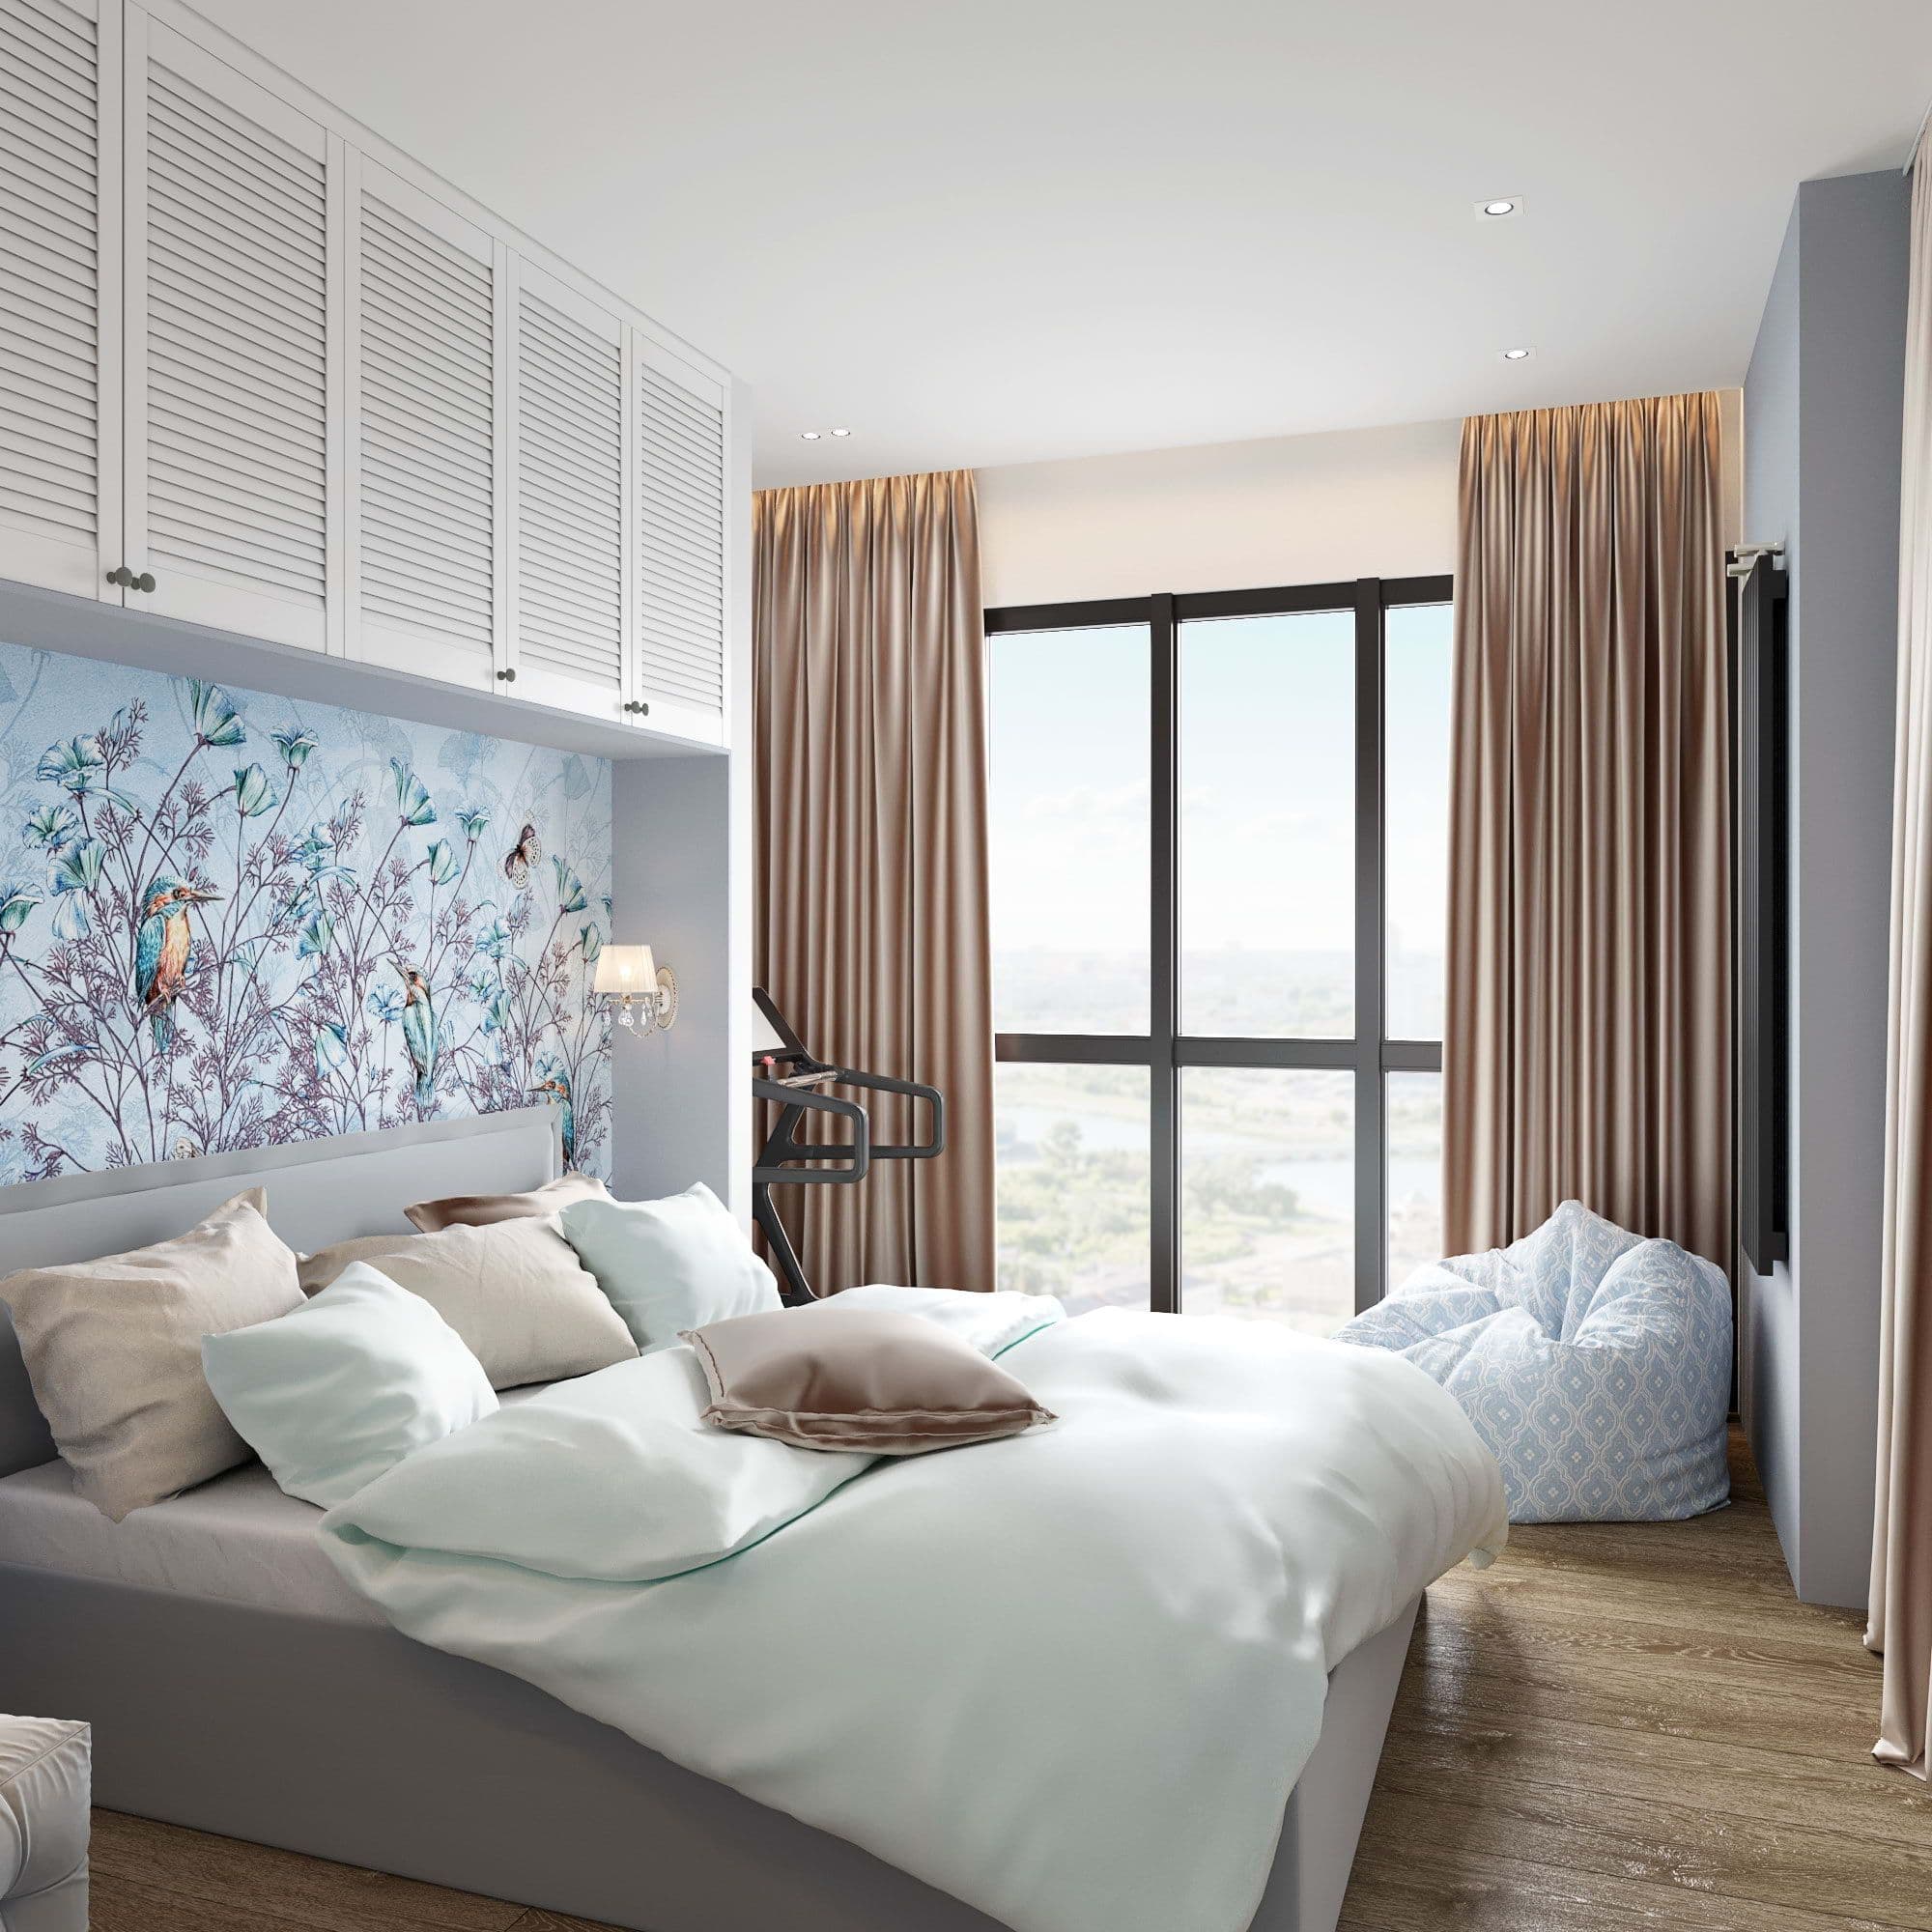 Дизайн спальни в современном стиле с белой кроватью, мягким изголовьем, декоративной штукатуркой,  с макияжным столиком, гипсовыми панелями, в светлых теплых бежевых тонах, вид 2